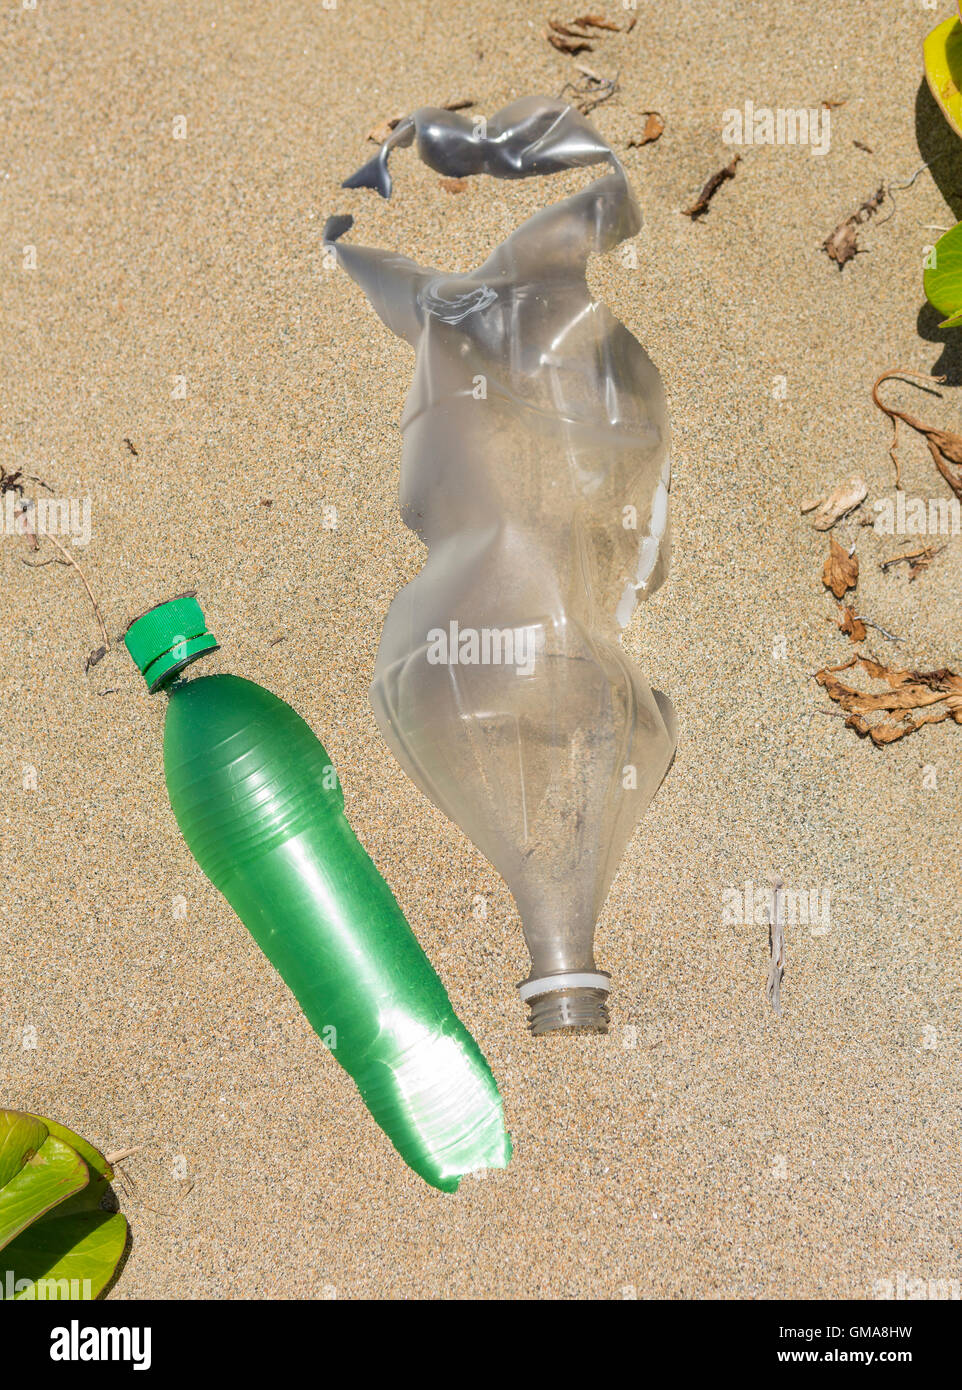 Dominikanische Republik - Müll am Strand, Kunststoff-Flaschen und Müll, in der Nähe der Mündung des Yasica Flusses. Stockfoto